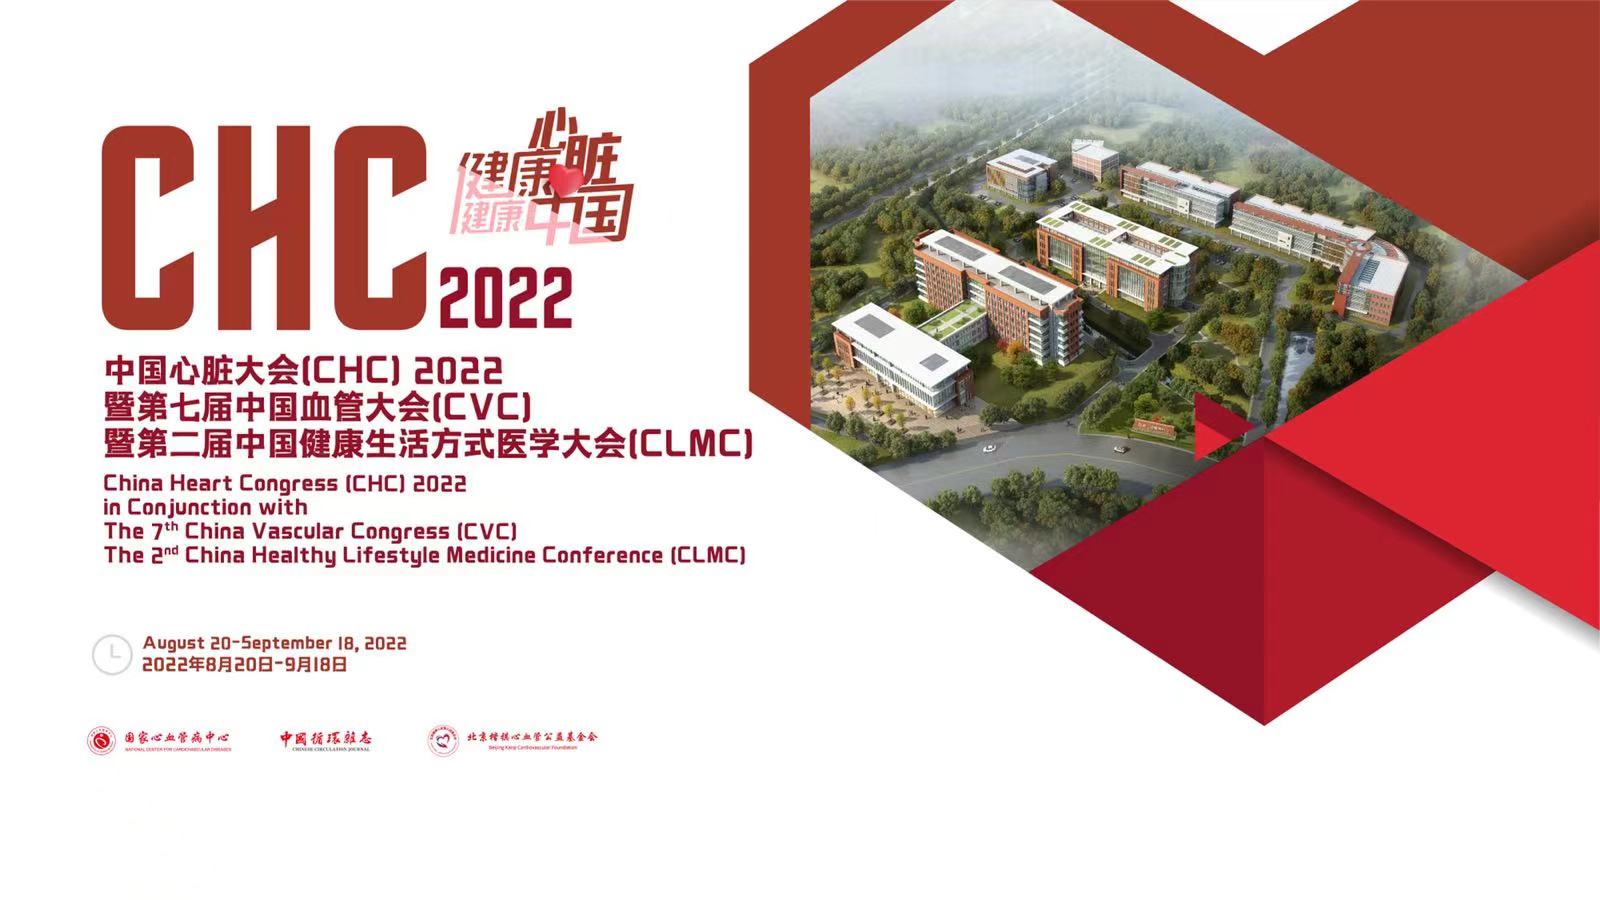 中国心脏大会（CHC）2022暨第七届中国心血管大会（CVC）